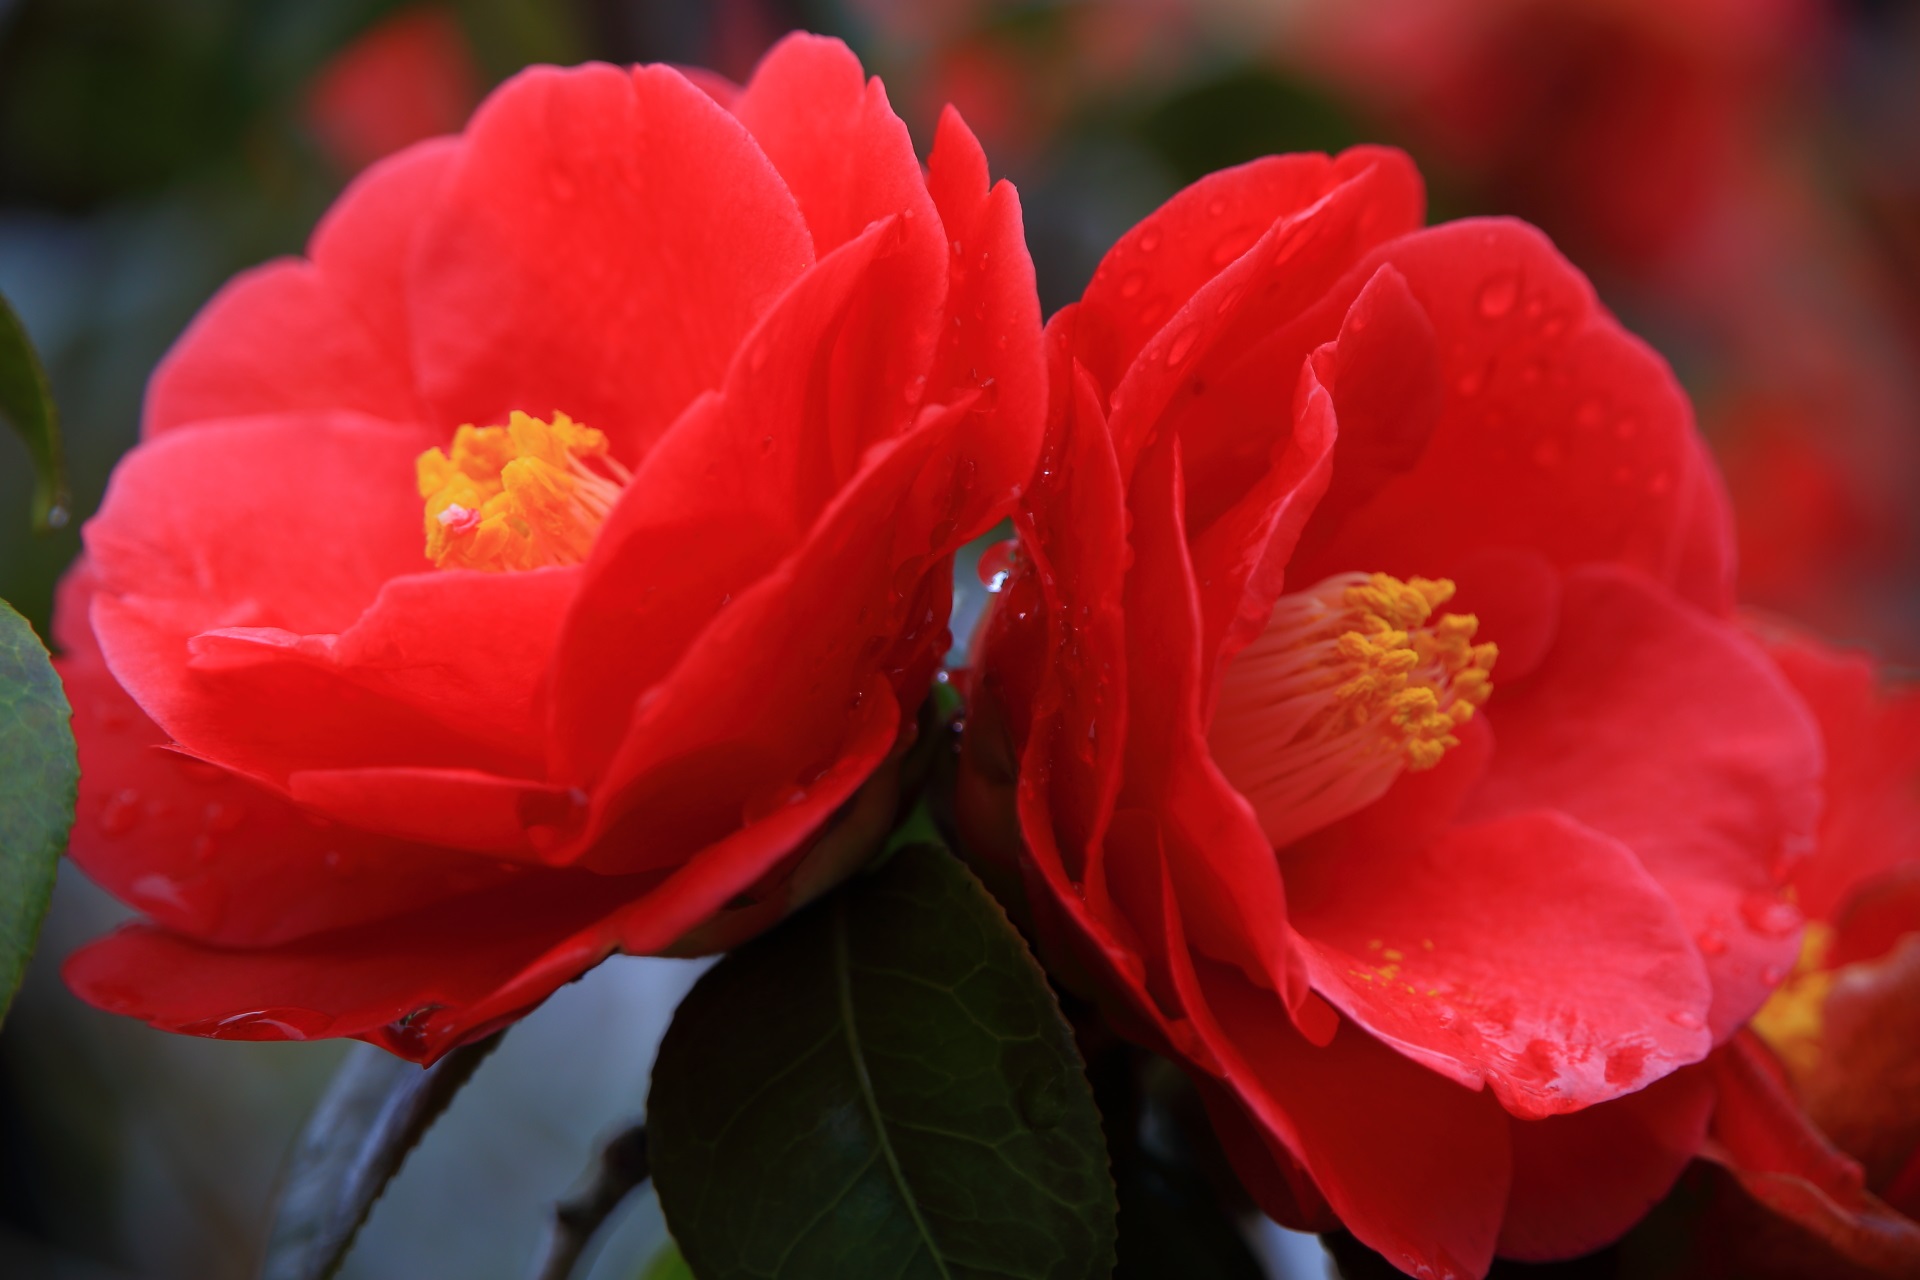 見事に咲き誇る鮮烈な赤い椿の花